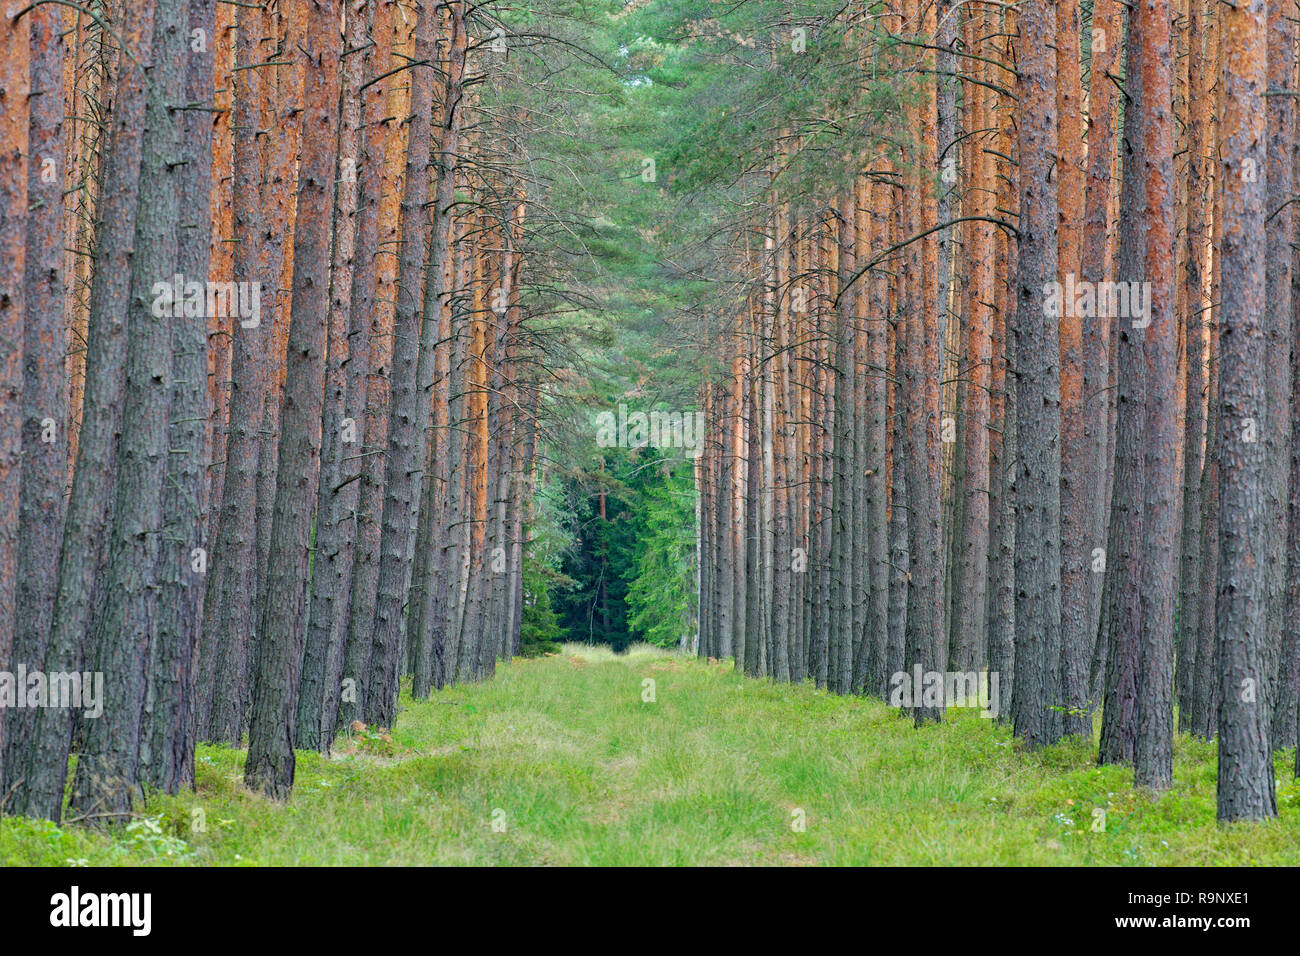 Gemeine Kiefer (Pinus sylvestris) Baumstämme und feuerschneisen/fireroad/Fire Line/Kraftstoff Pause bushfire Prävention im Nadelwald Stockfoto